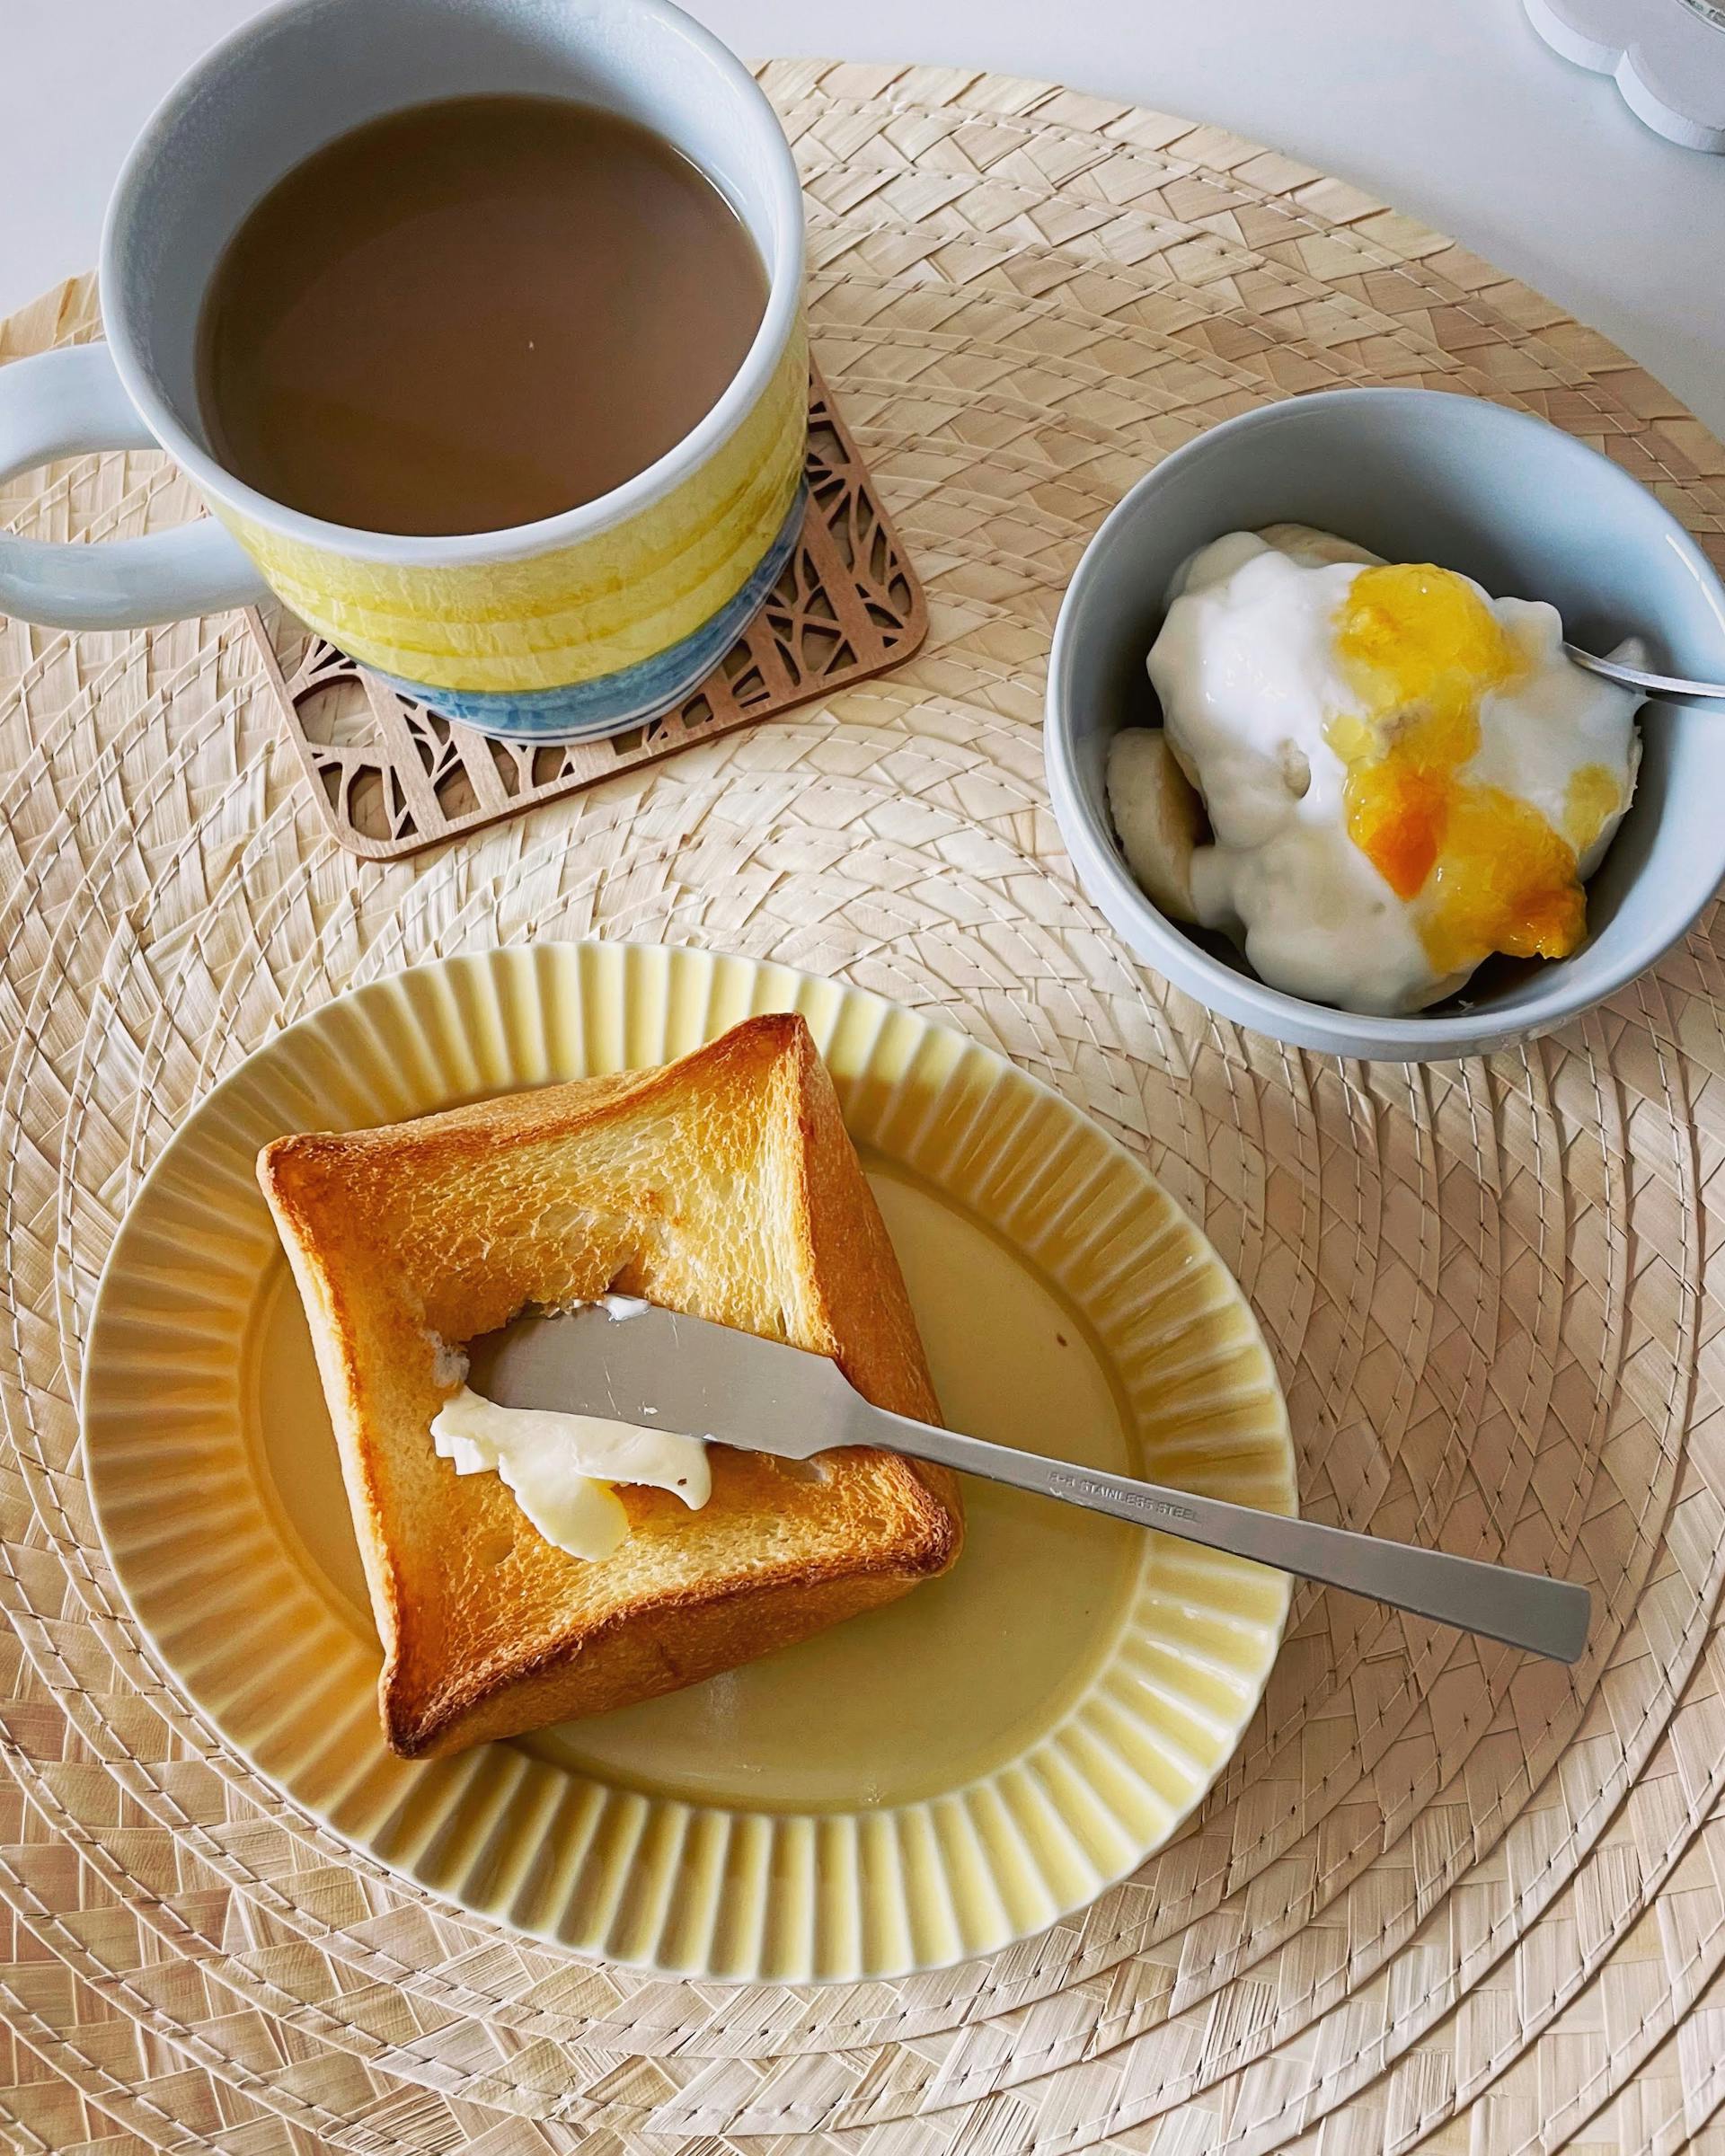 Tostadas con mantequilla, café y cereales | Fuente: Pexels